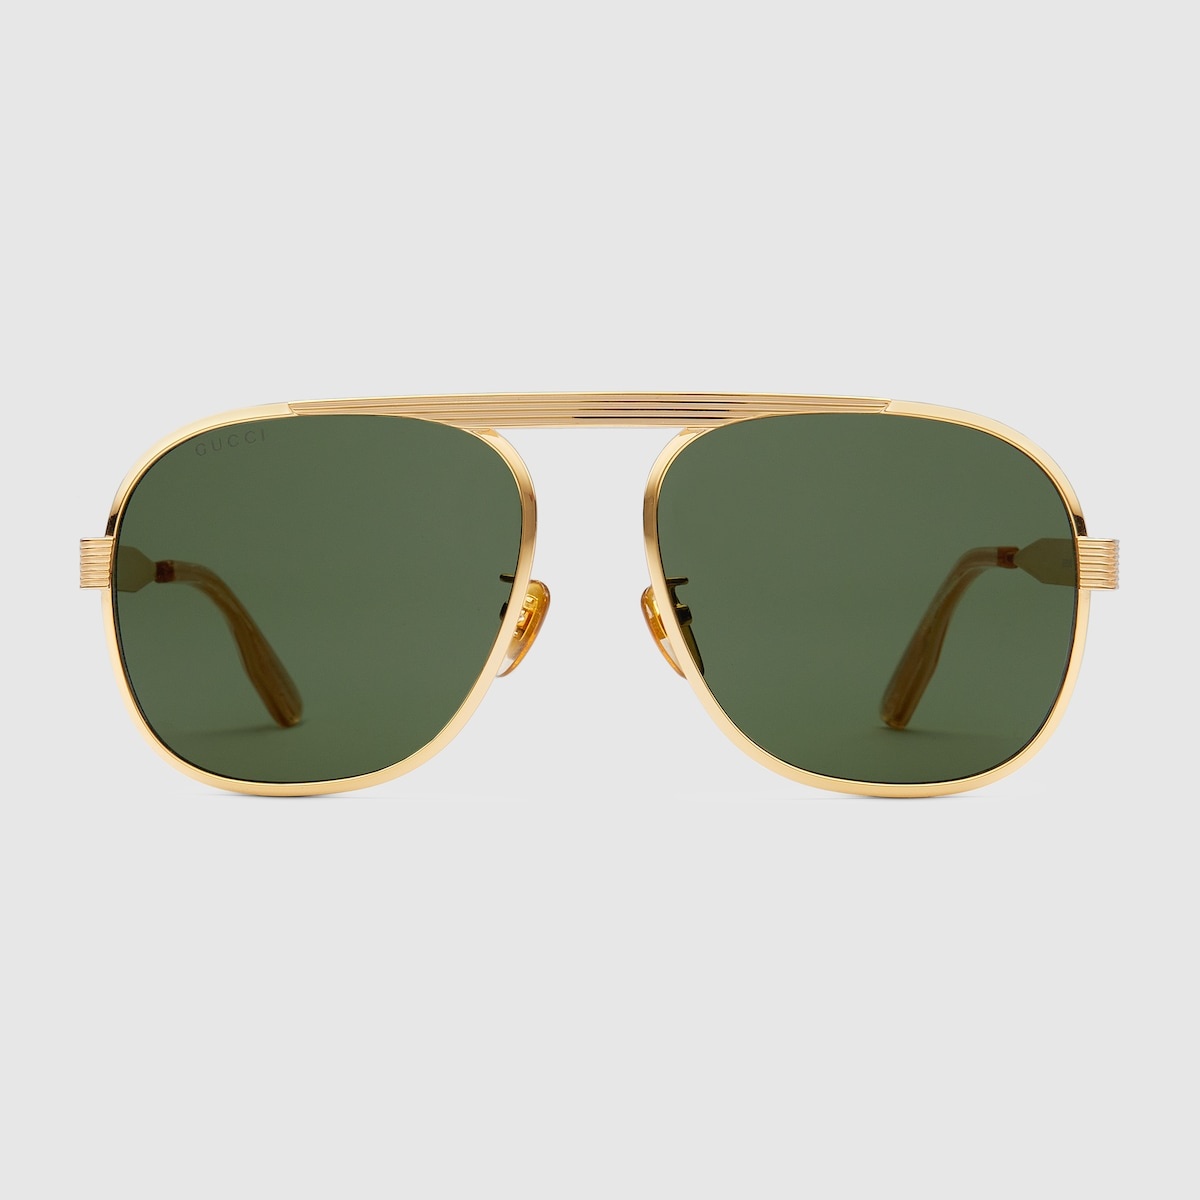 Navigator frame sunglasses - 1